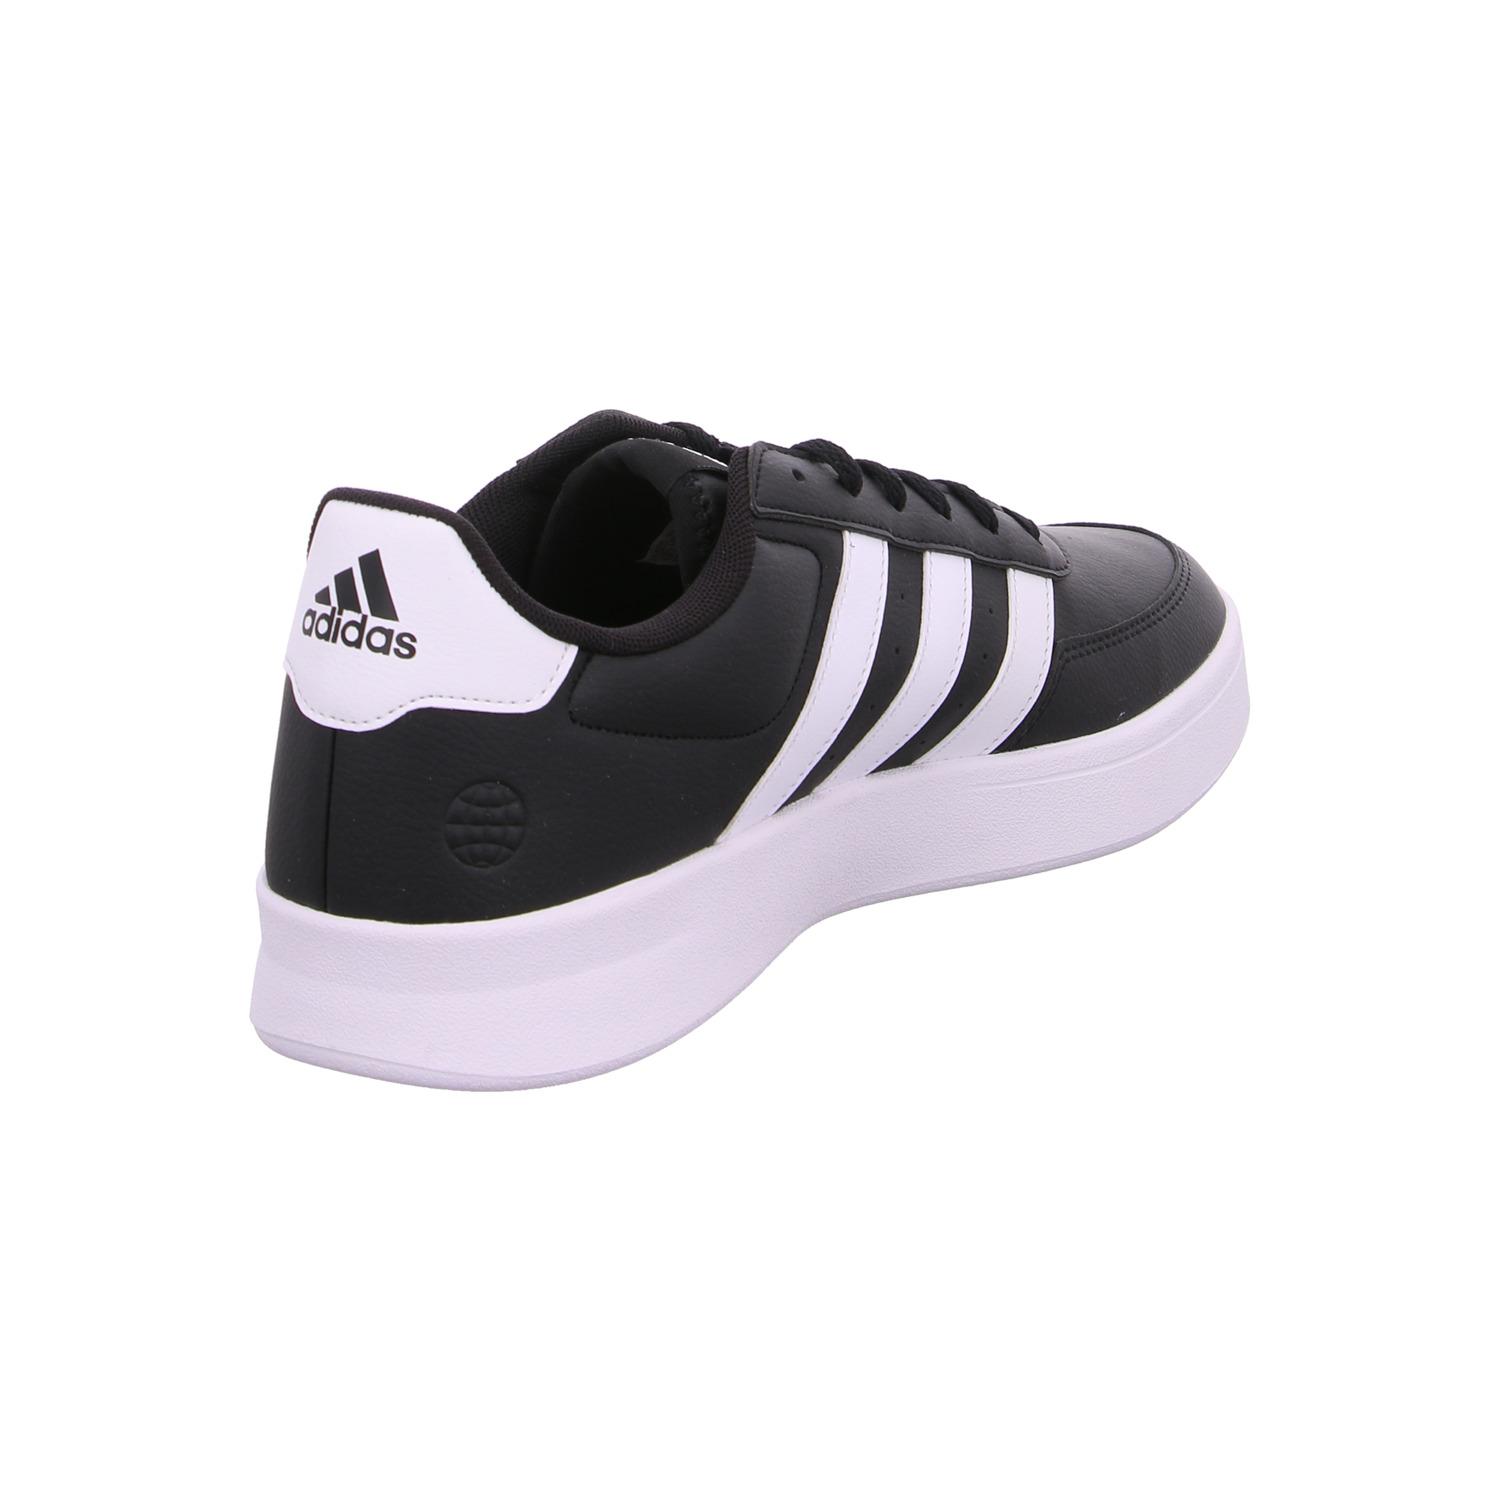 adidas-sport-fashion-herren-schwarz-118332-11